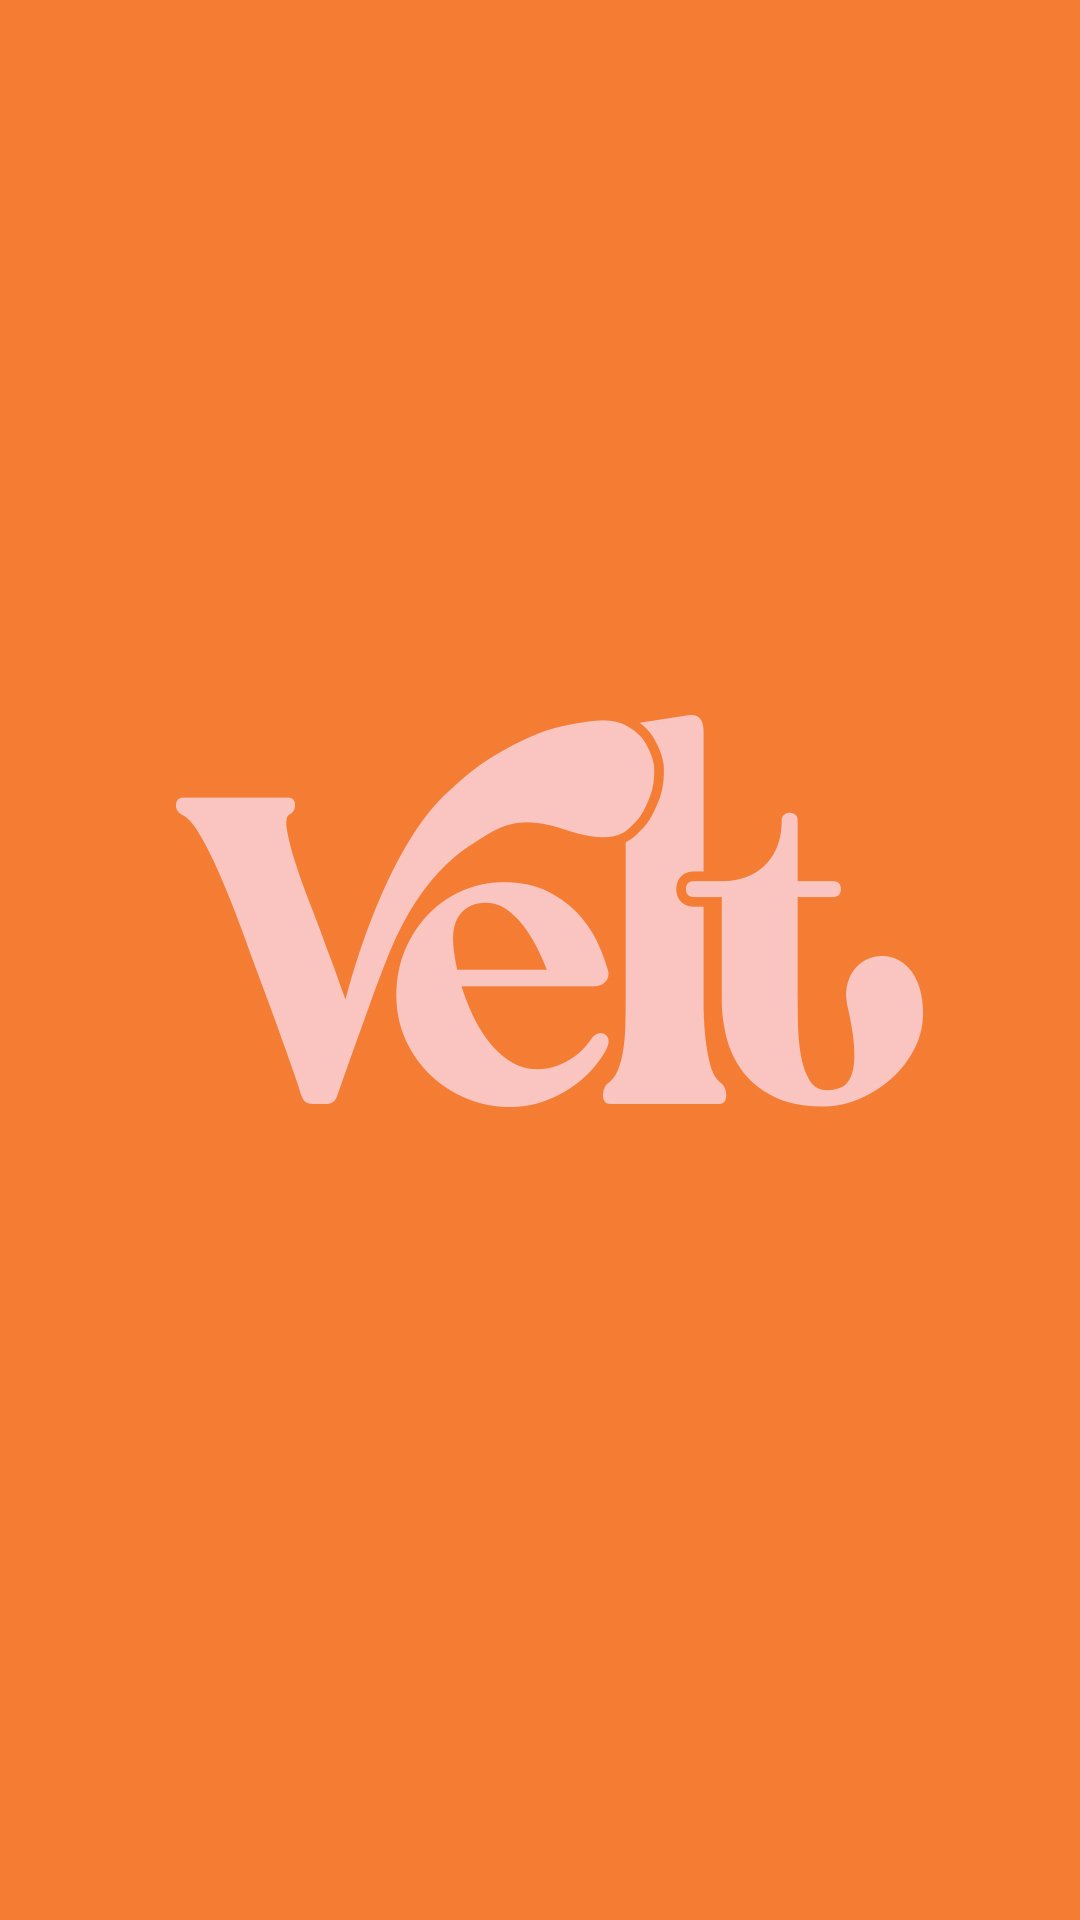 Velt-beauty logo design-1.jpg